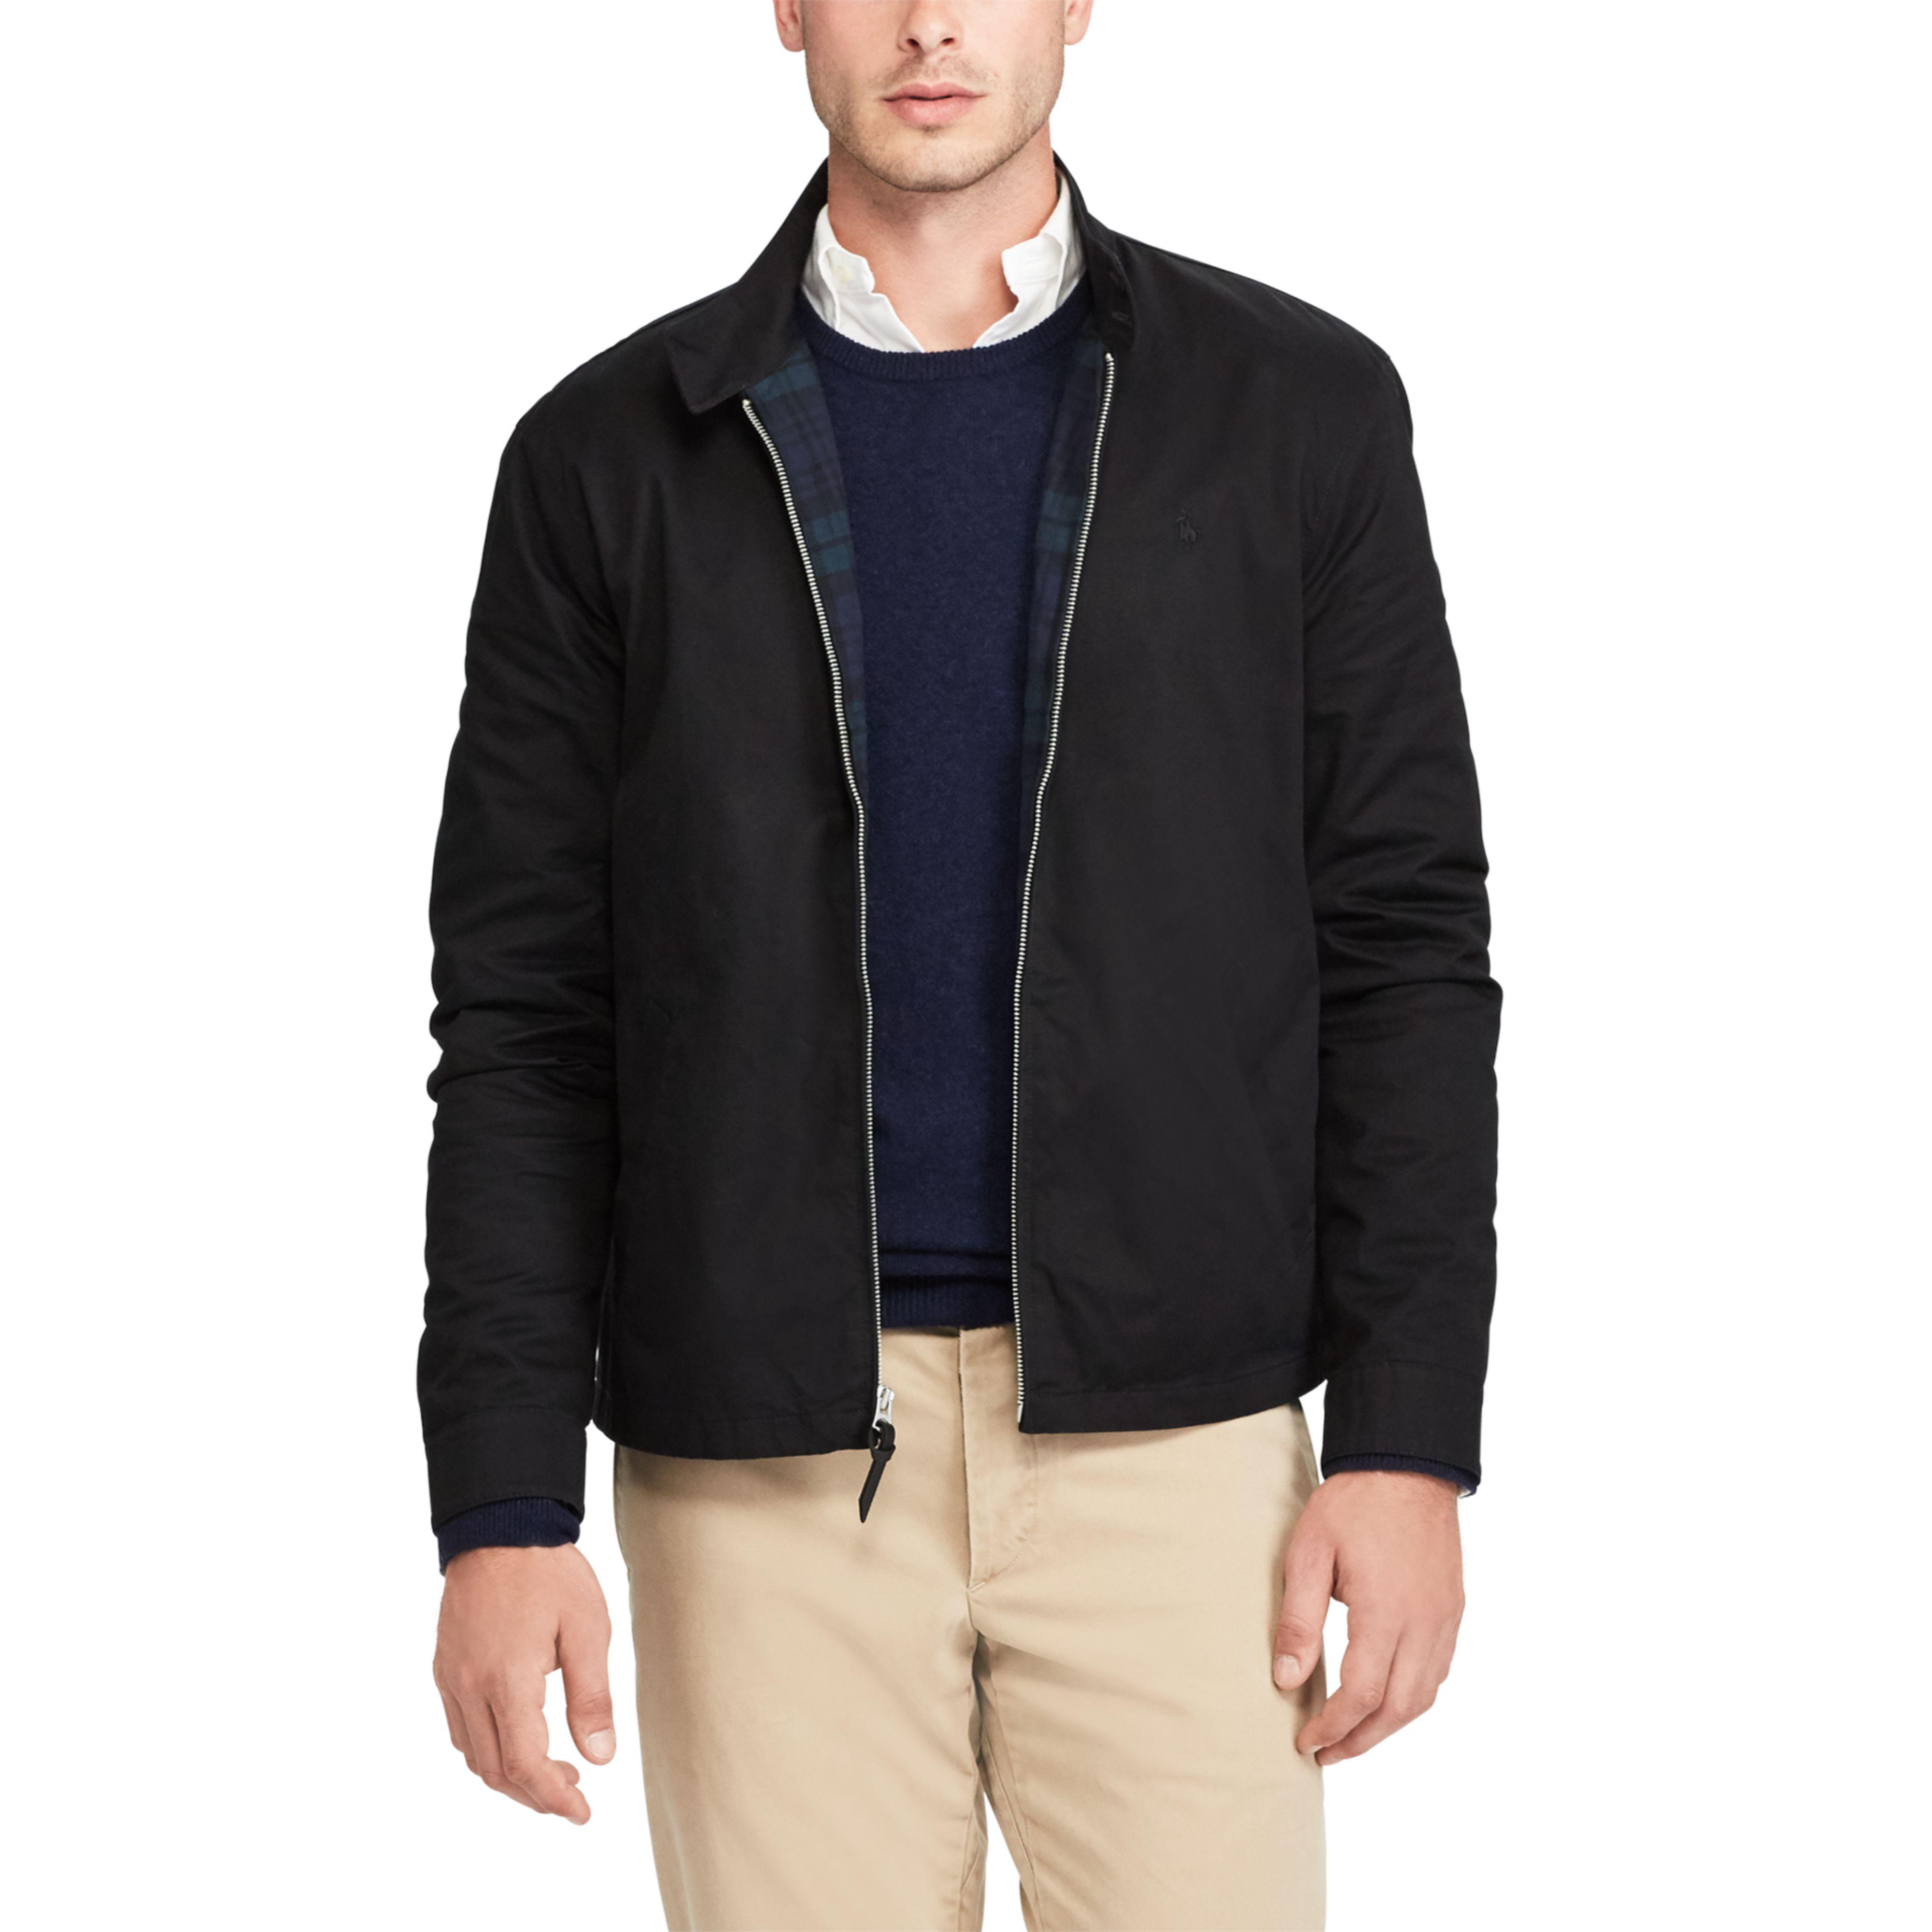 polo cotton twill jacket